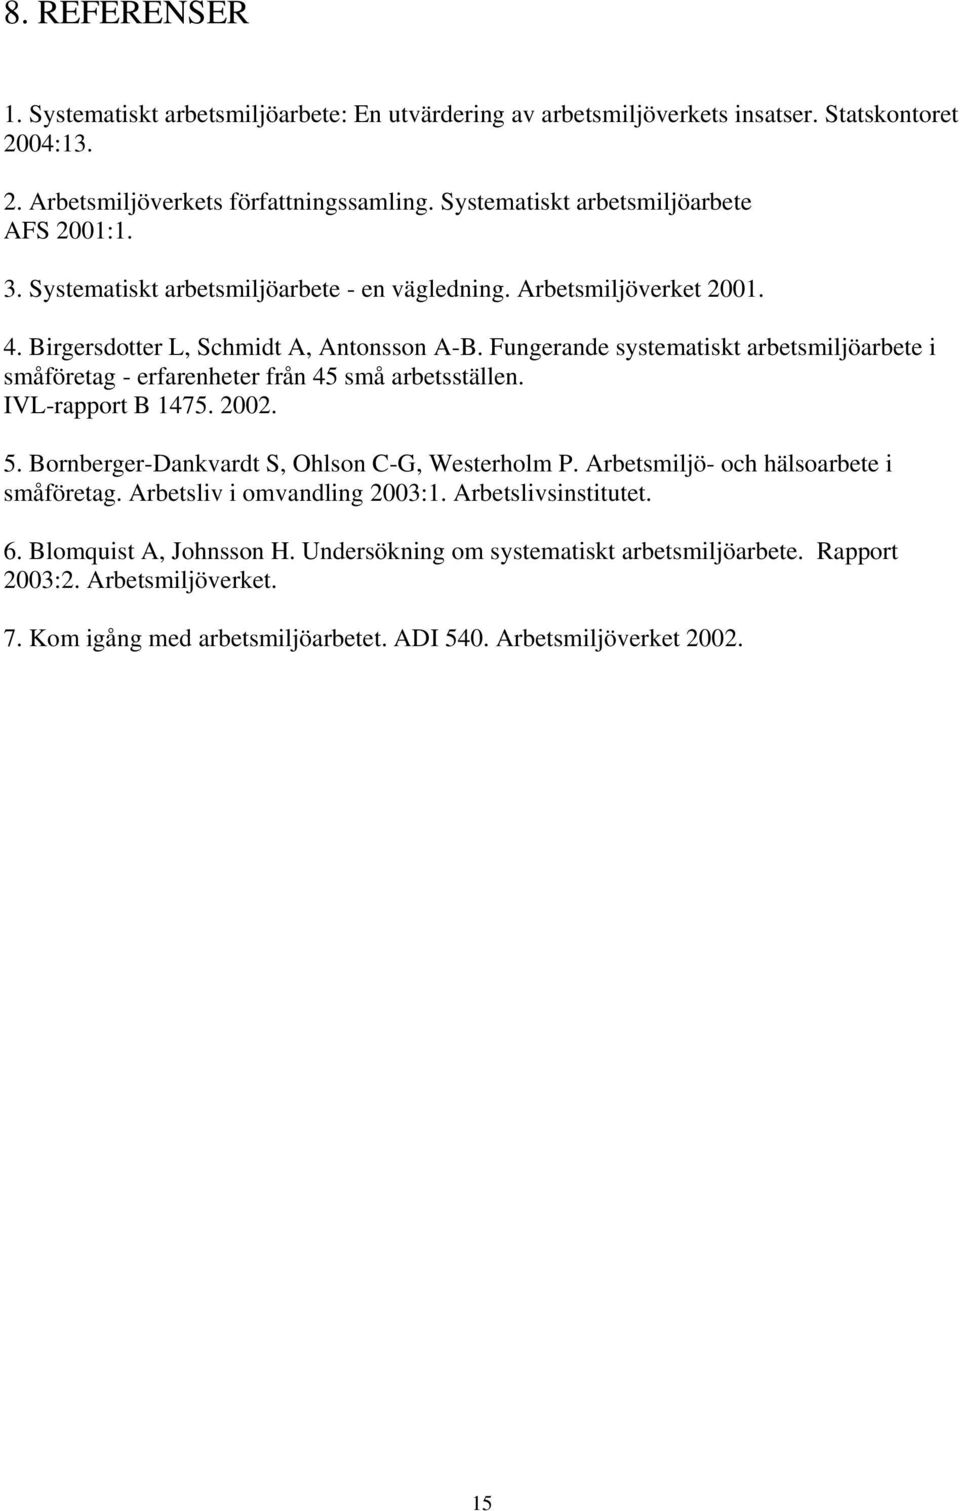 Fungerande systematiskt arbetsmiljöarbete i småföretag - erfarenheter från 45 små arbetsställen. IVL-rapport B 1475. 2002. 5. Bornberger-Dankvardt S, Ohlson C-G, Westerholm P.